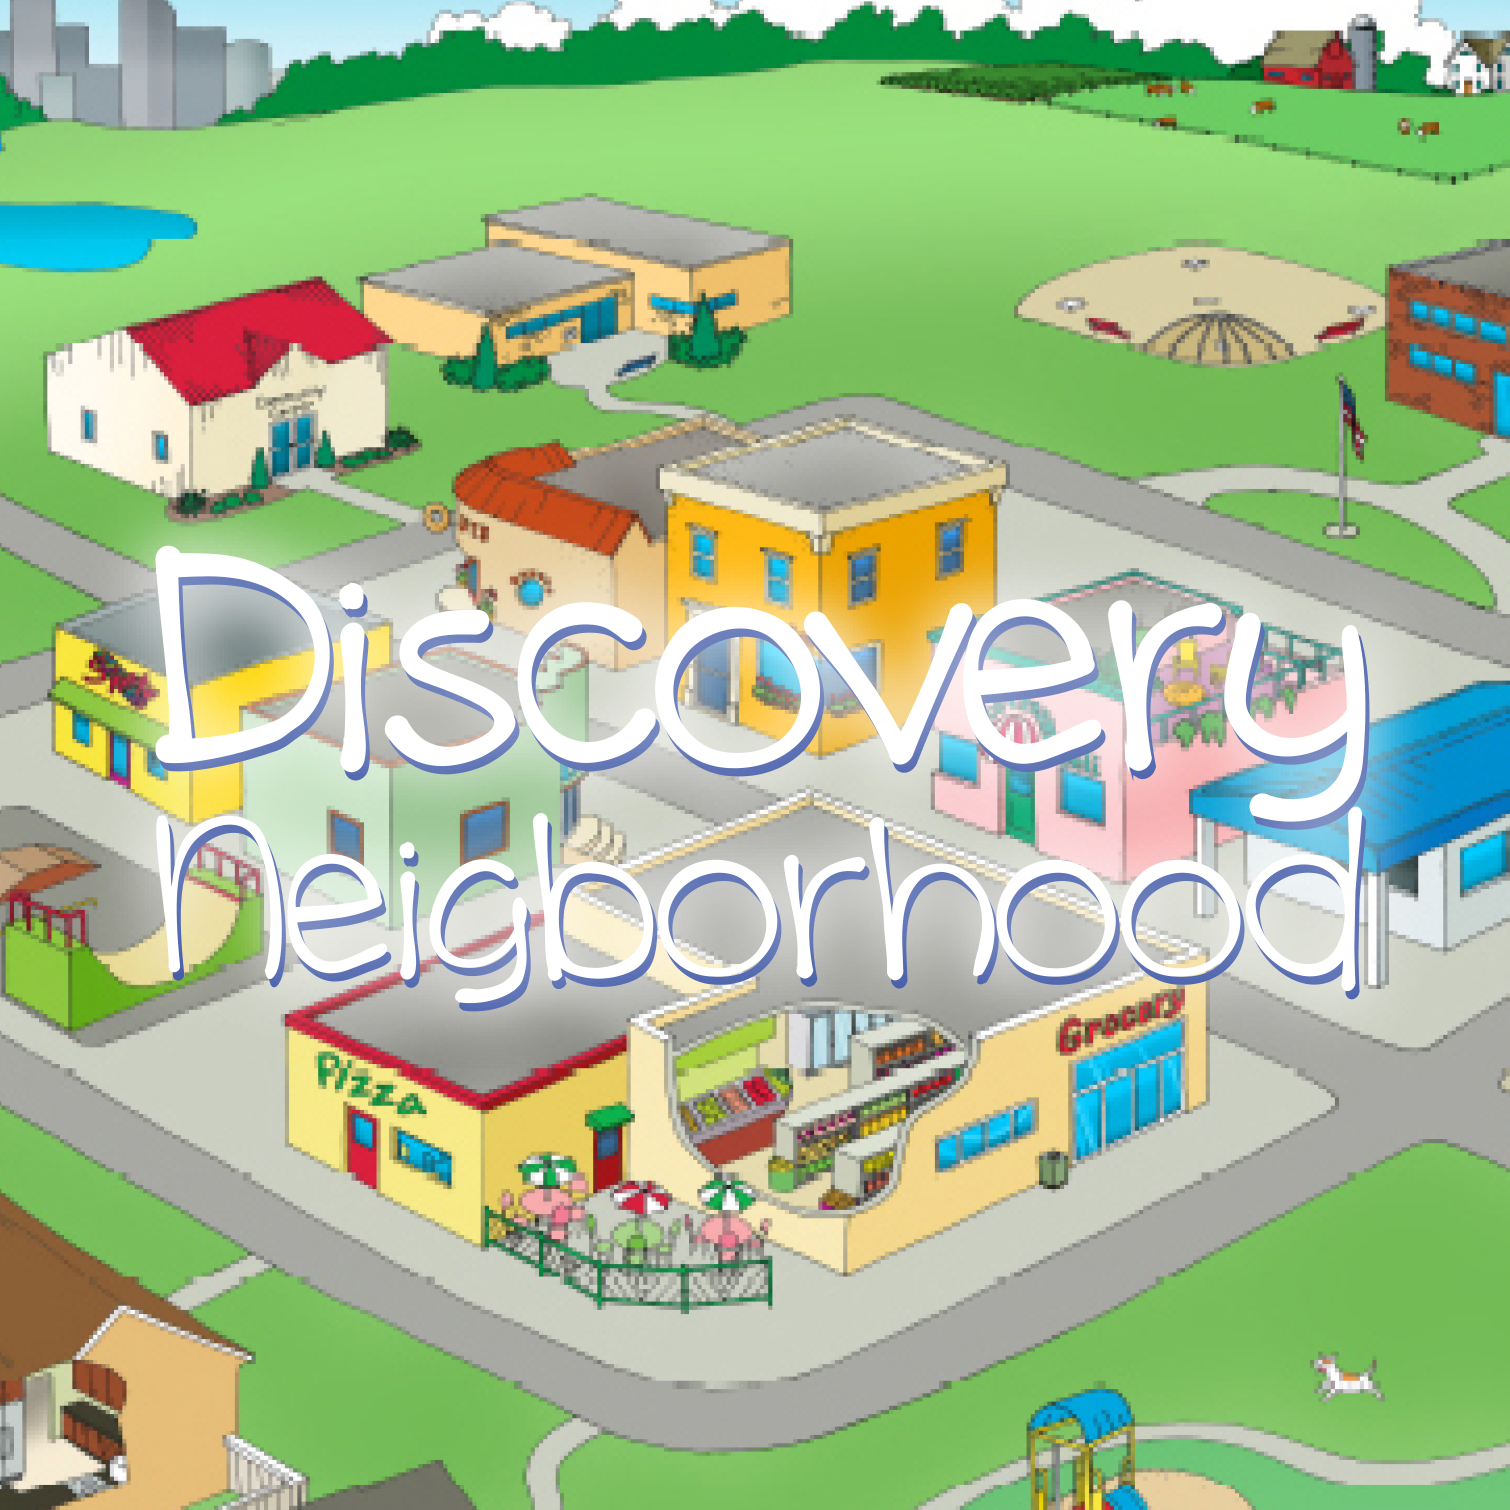 Discovery Neighborhood